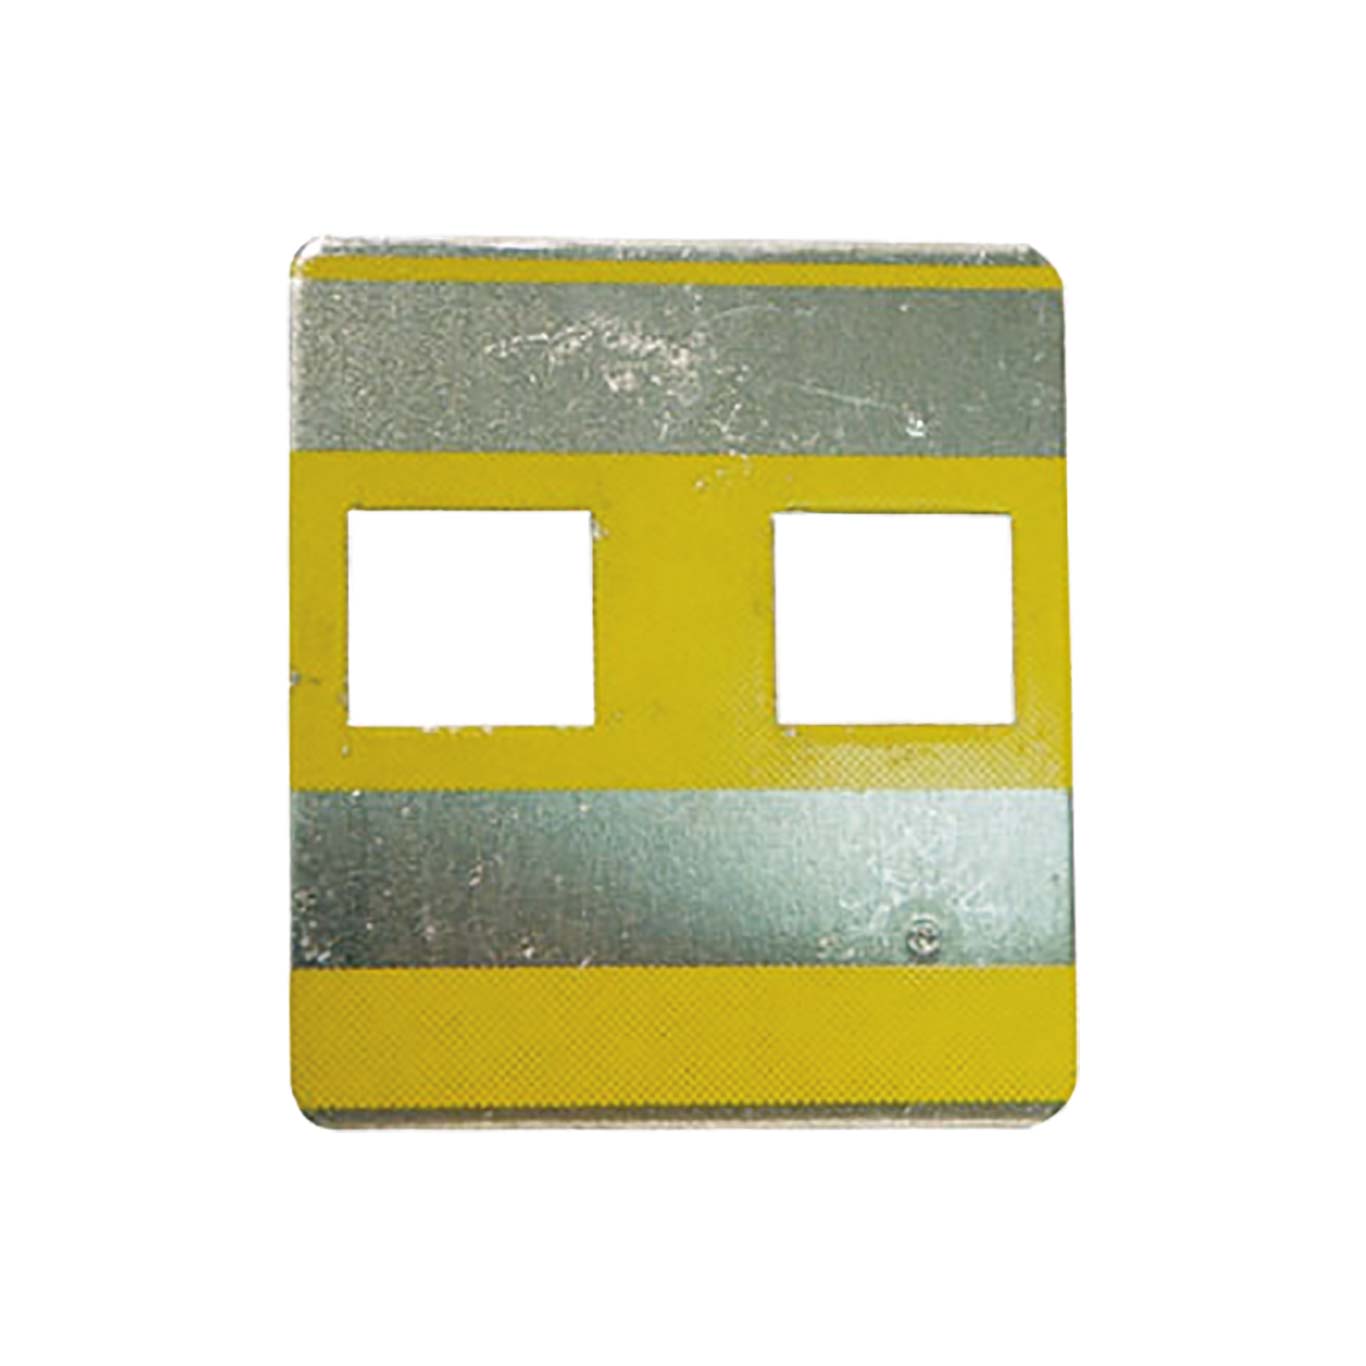 Distansskylt 65x72 mm, gul  för instansning